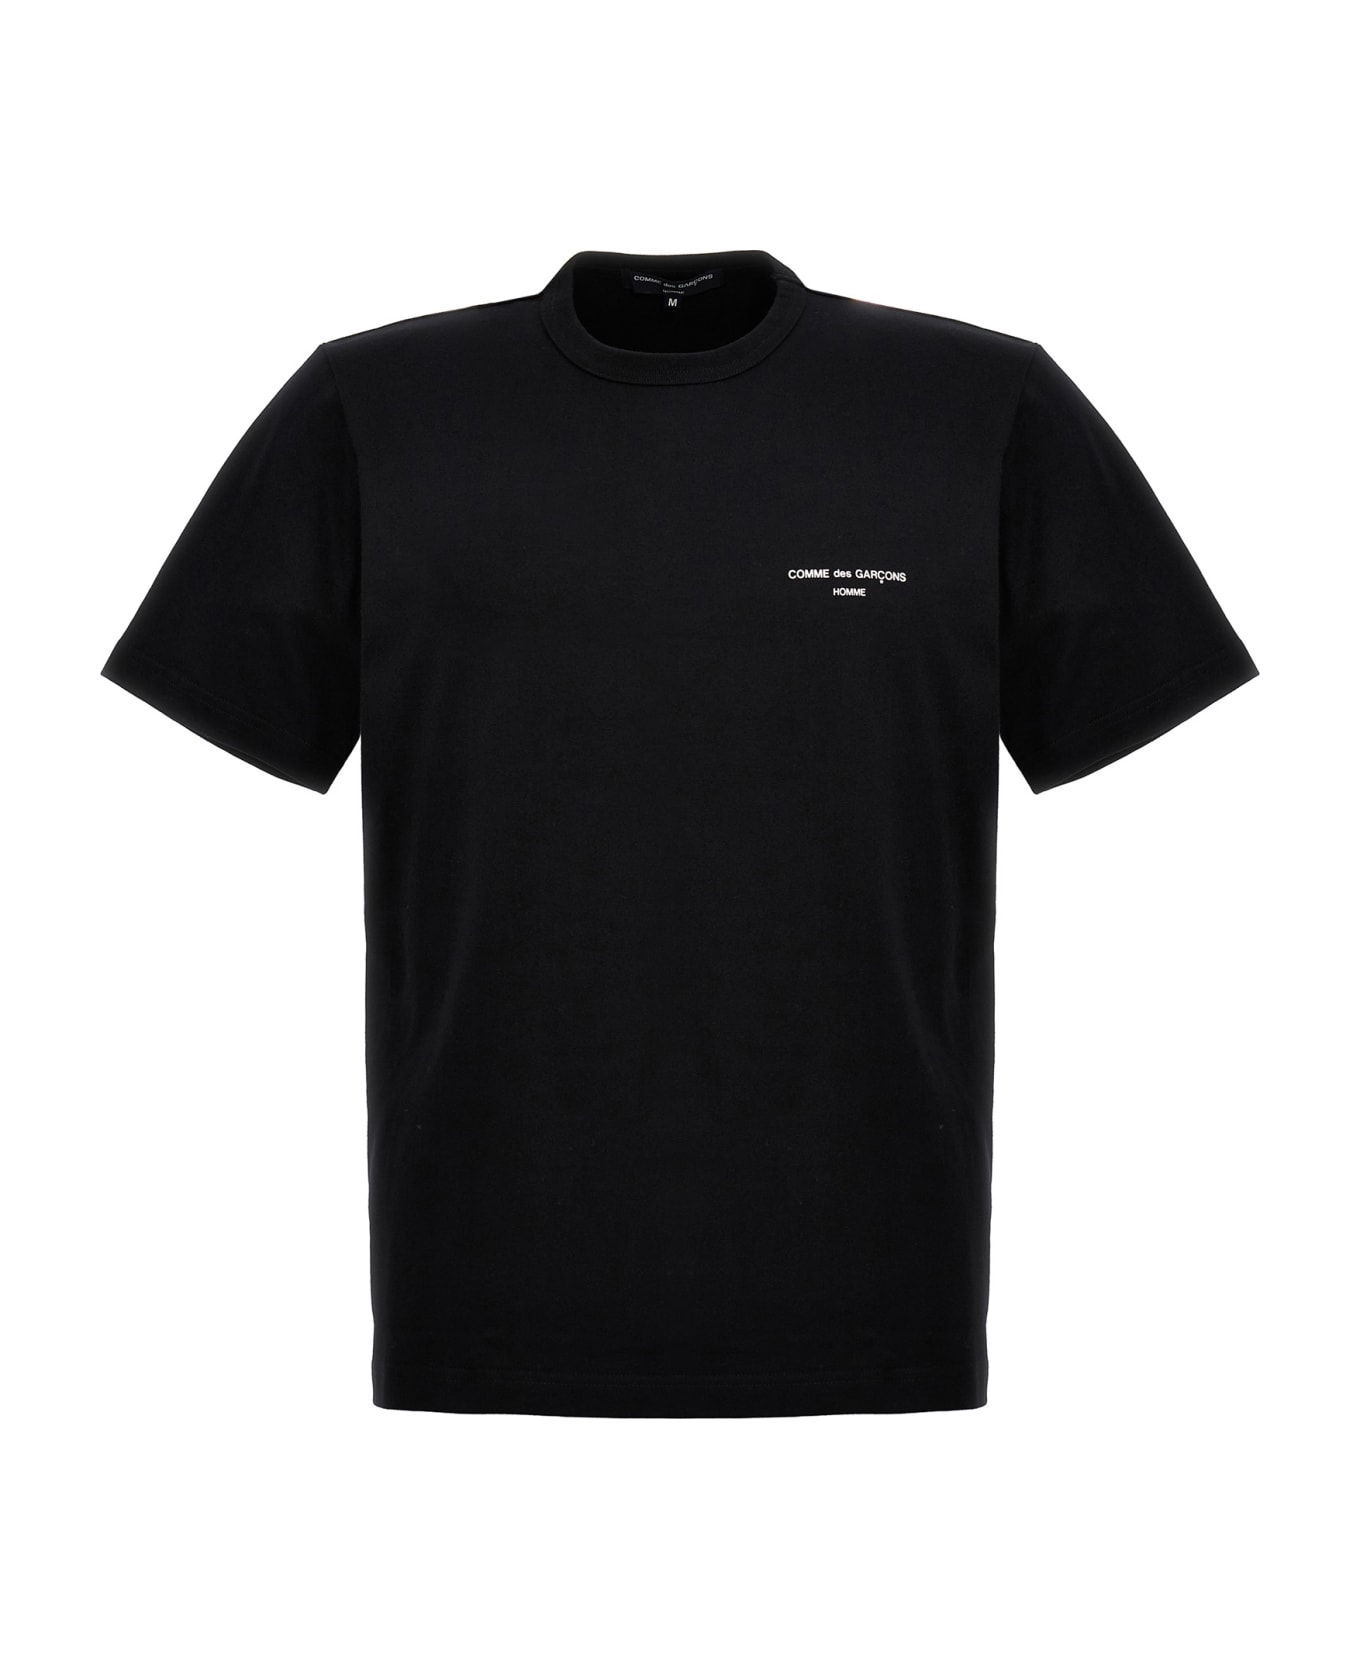 Comme des Garçons Homme Logo Print T-shirt - Black   シャツ